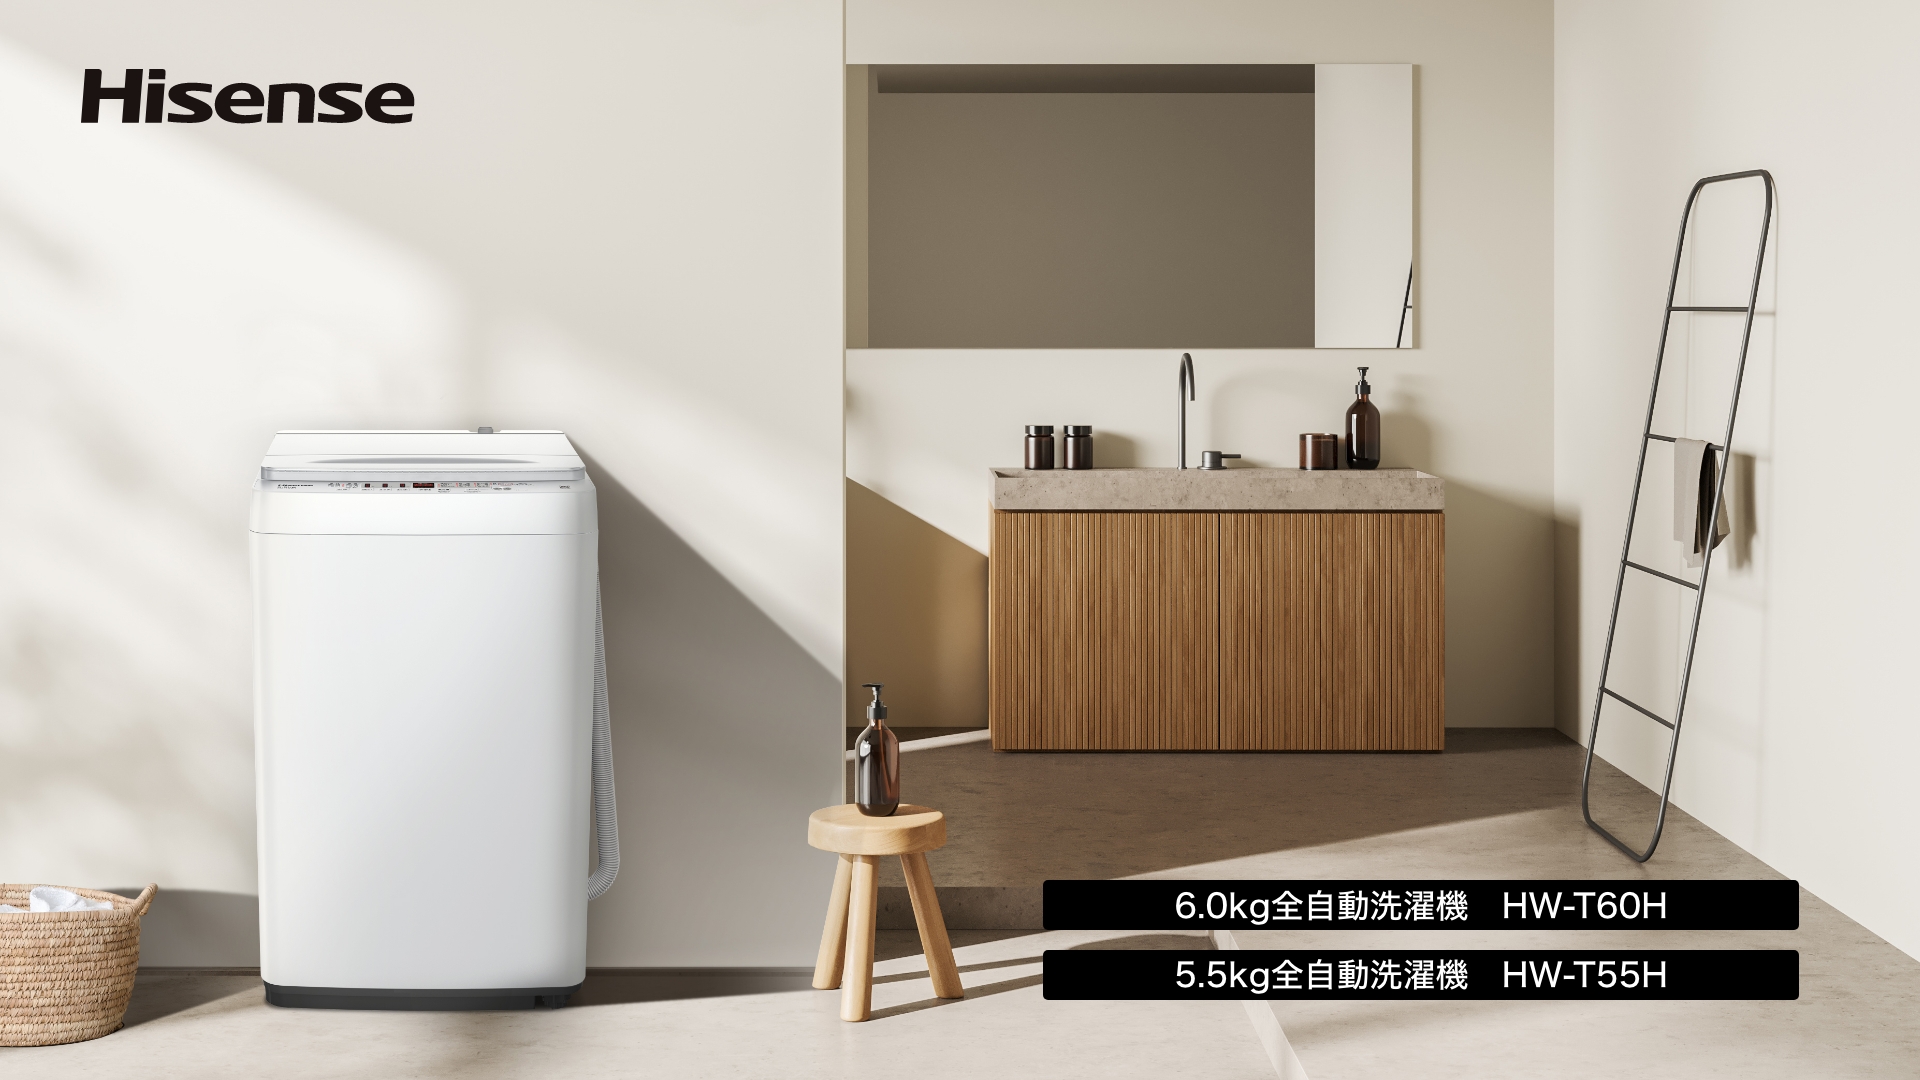 全自動洗濯機2機種を11月上旬に発売 | ハイセンスジャパン株式会社